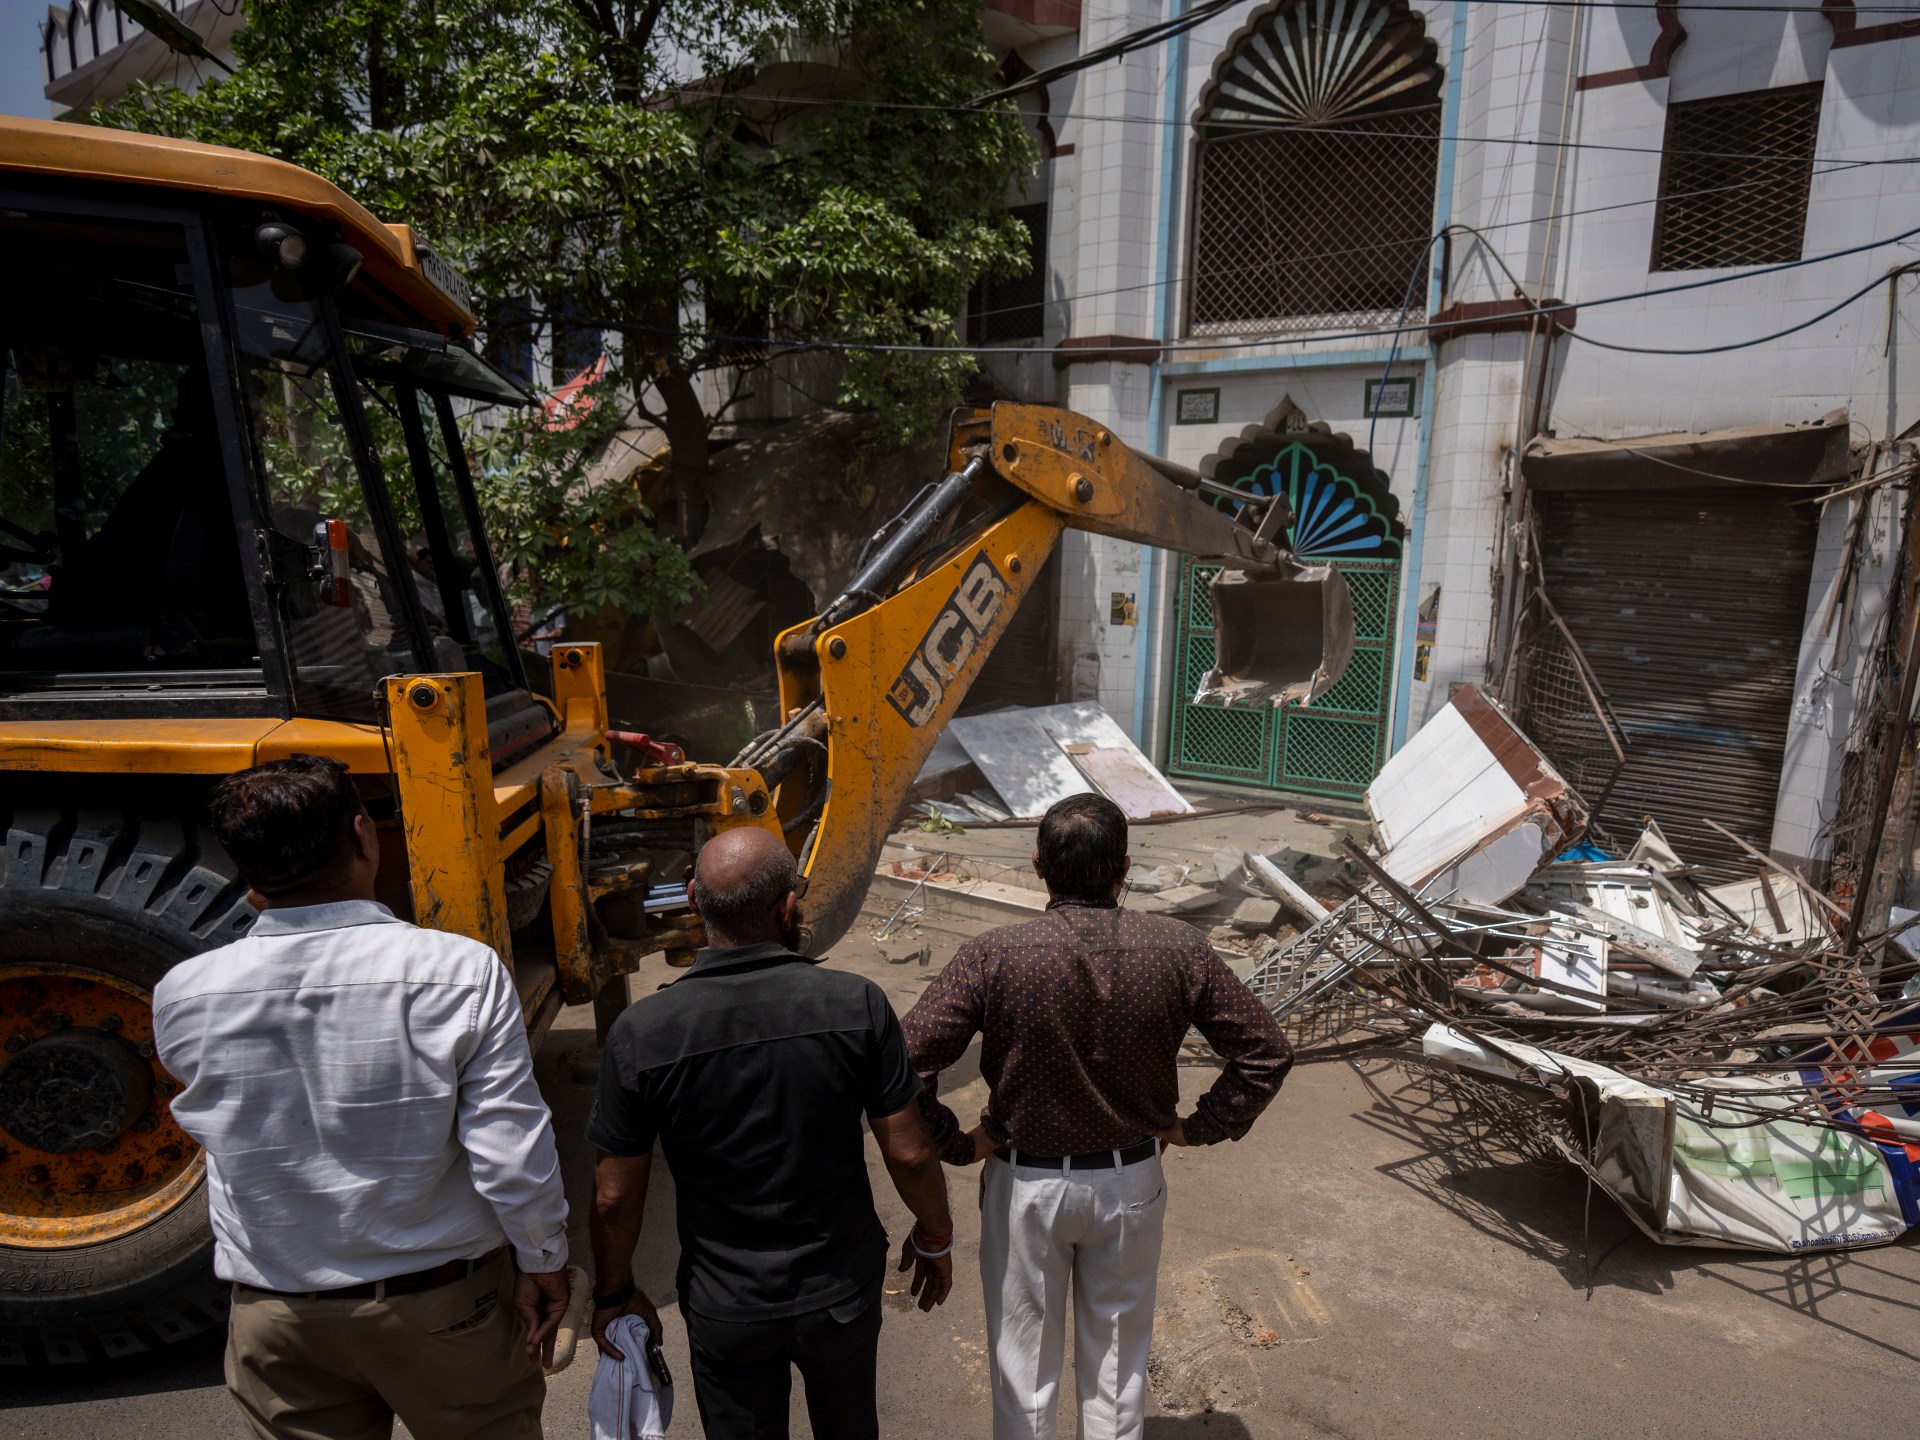 Politik Kiamat: Mengapa Modi Ingin Menghancurkan Masjid India |  Politik